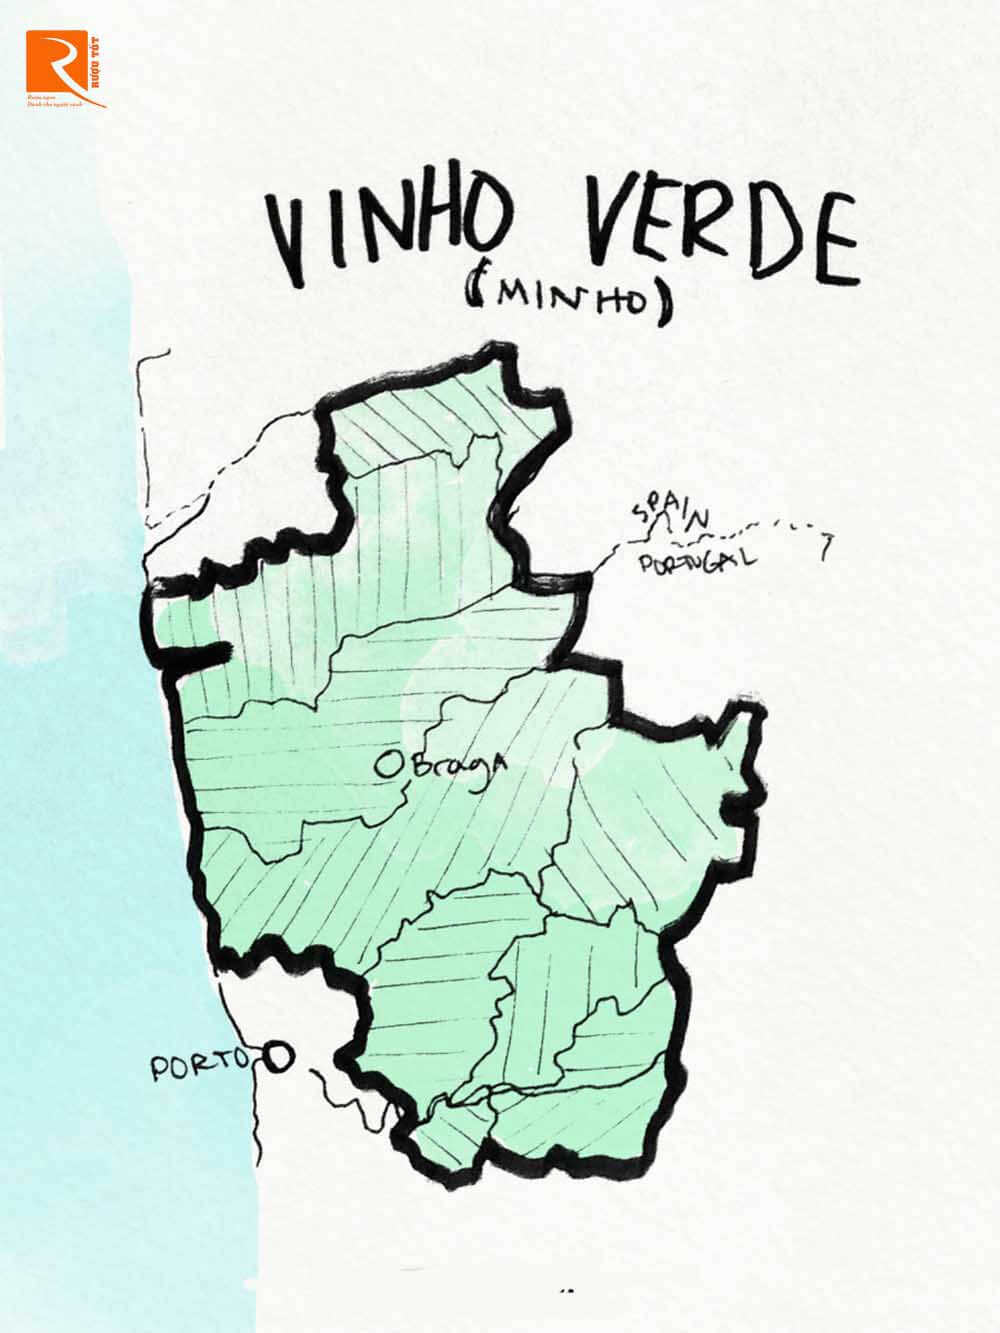 Rượu vang lạnh như băng trên bãi biển đến từ Bồ Đào Nha là Vinho Verde.